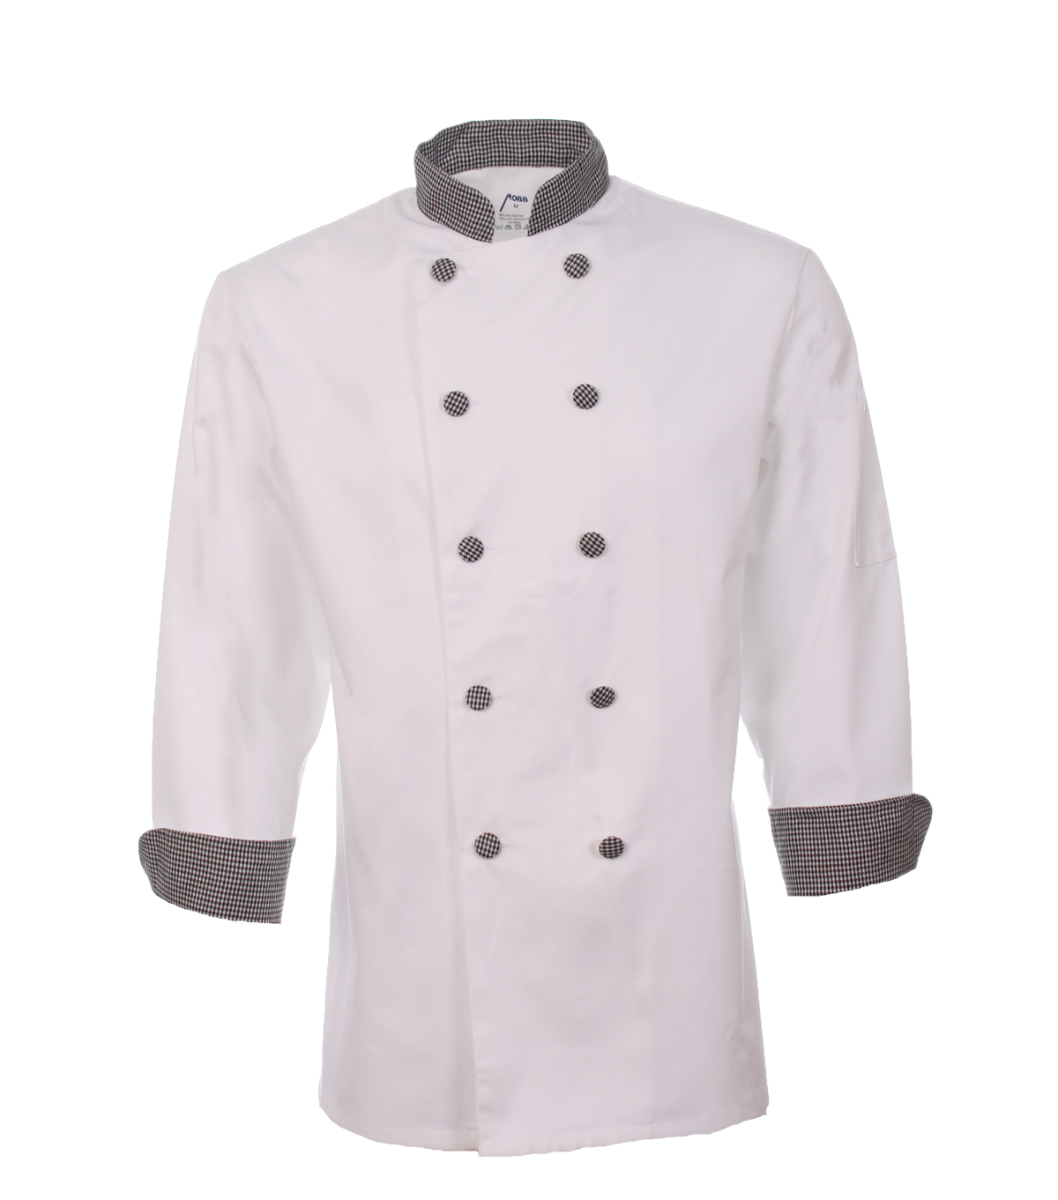 Veste de cuisinier classique MOBB #CC250 blanc et noir ligné